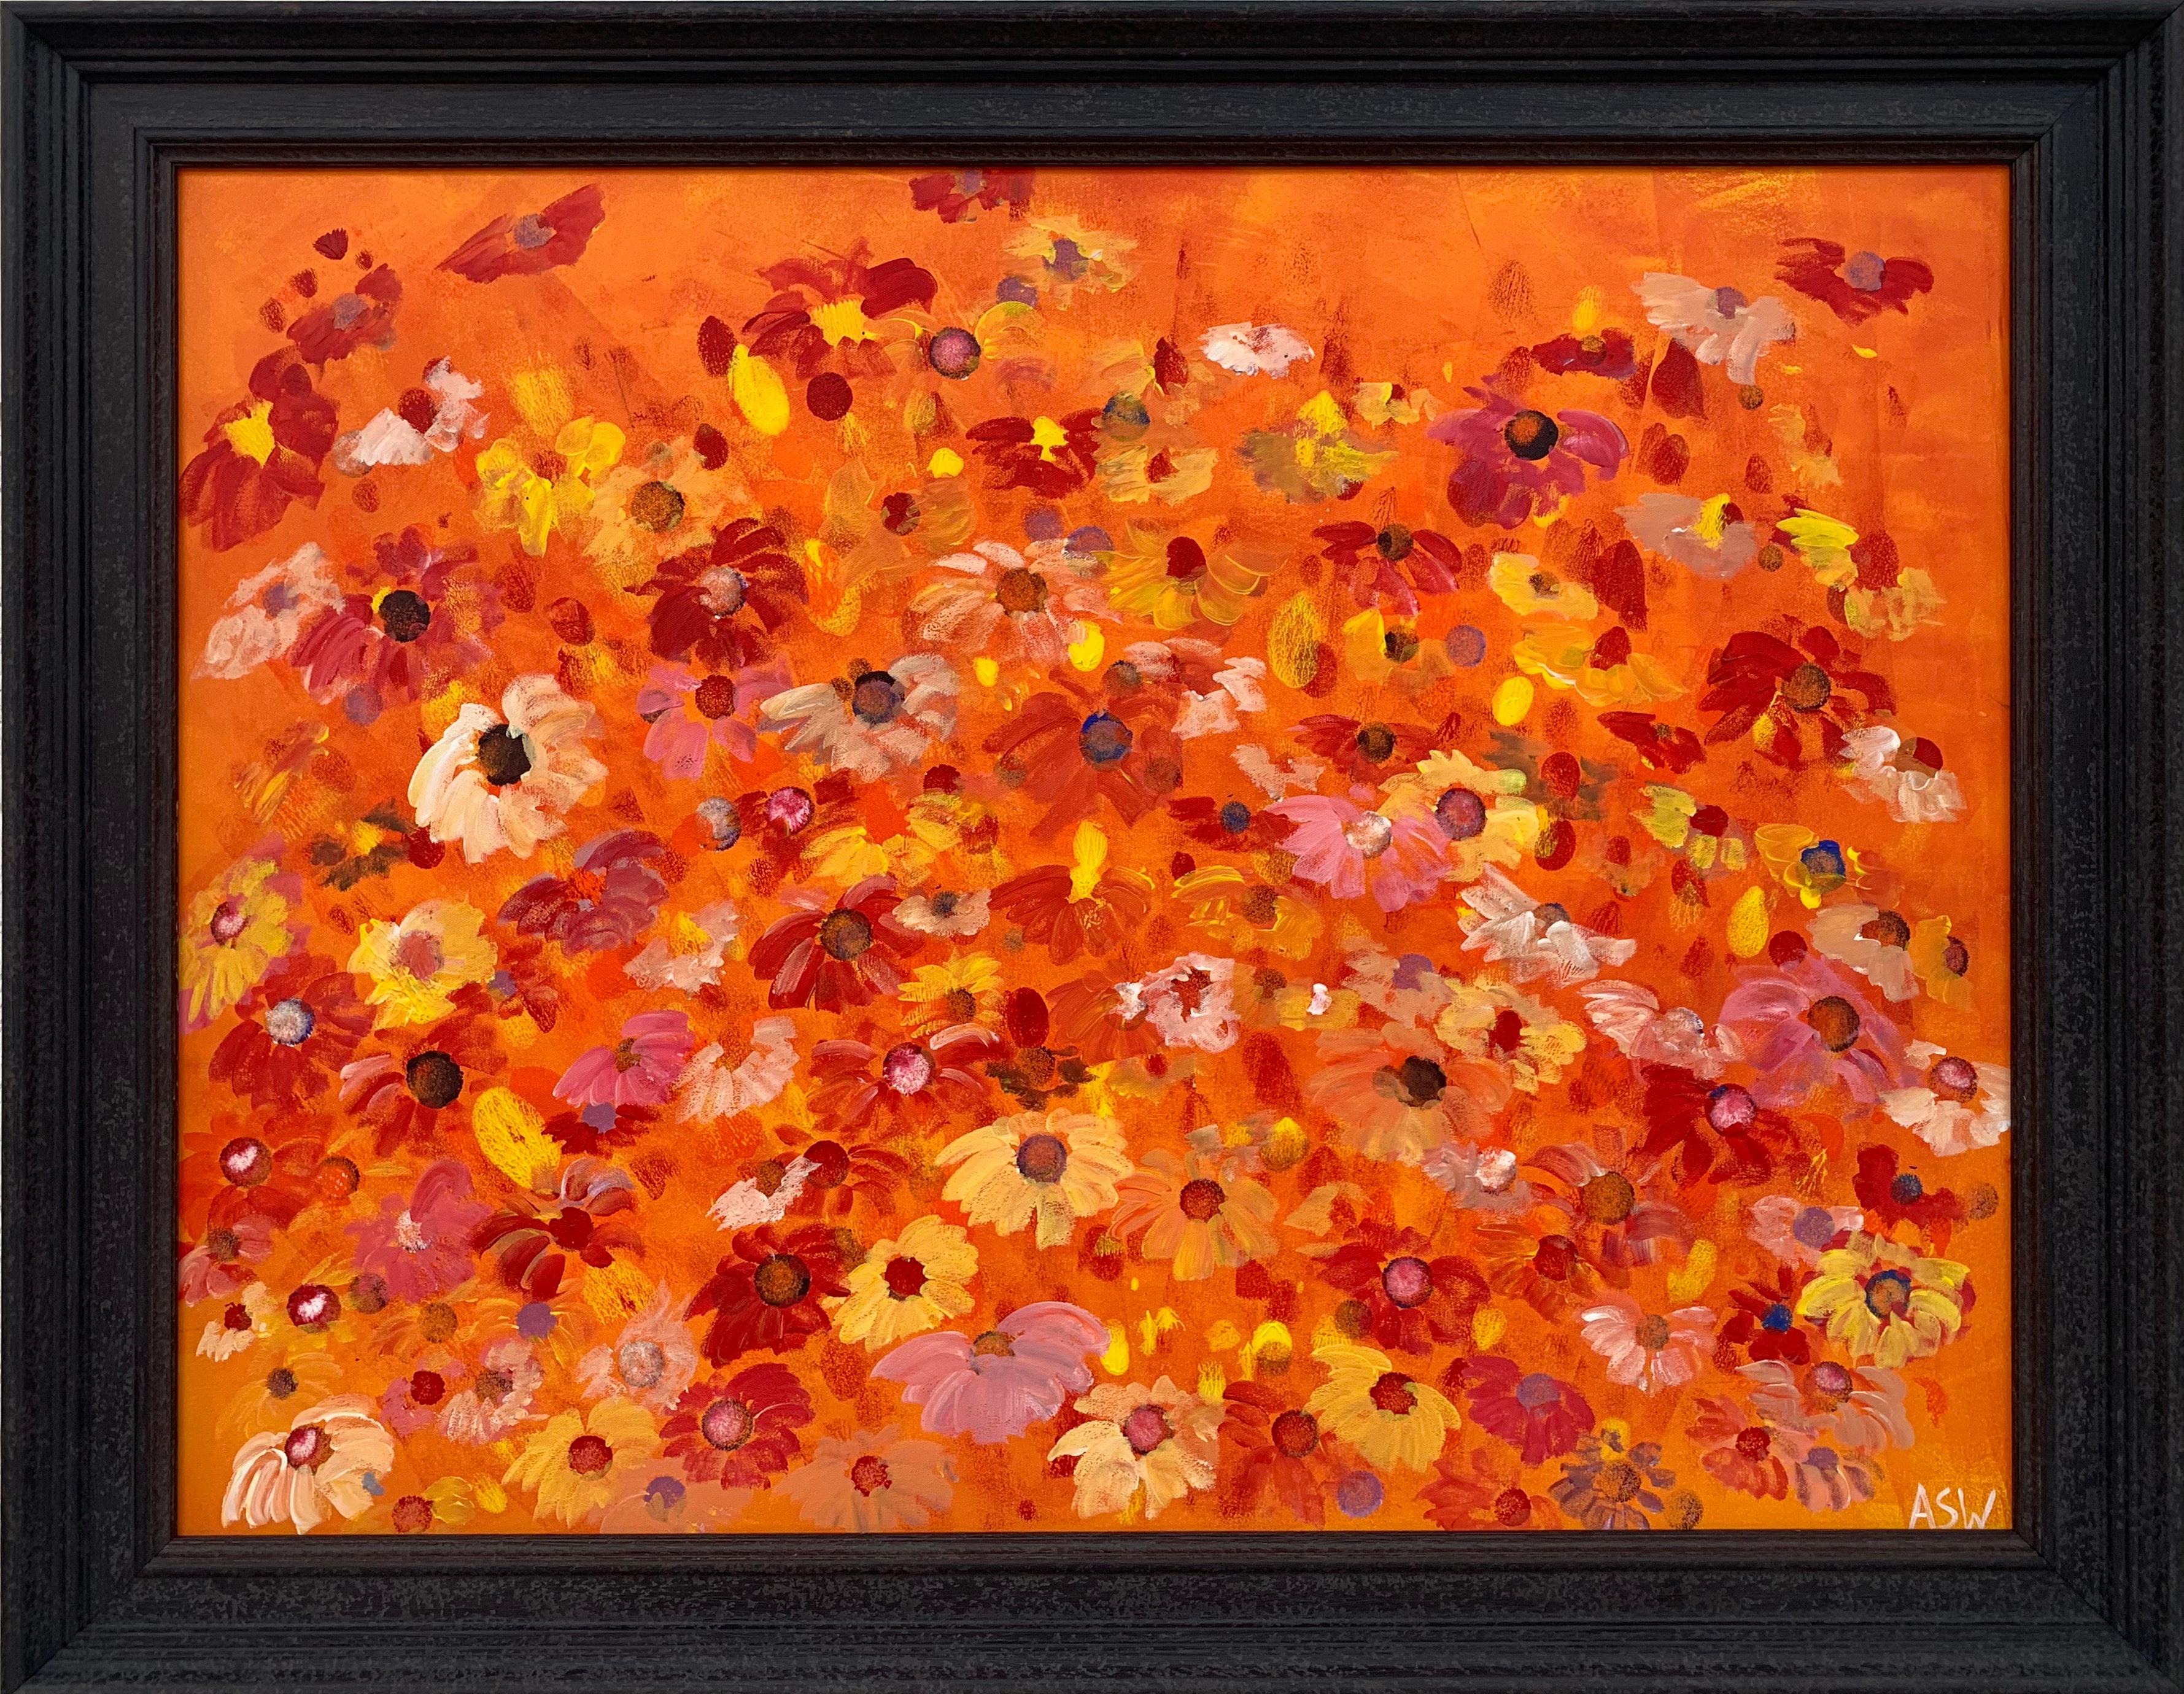 Diseño abstracto de flores silvestres rojas y rosas sobre naranja, obra de un artista británico contemporáneo